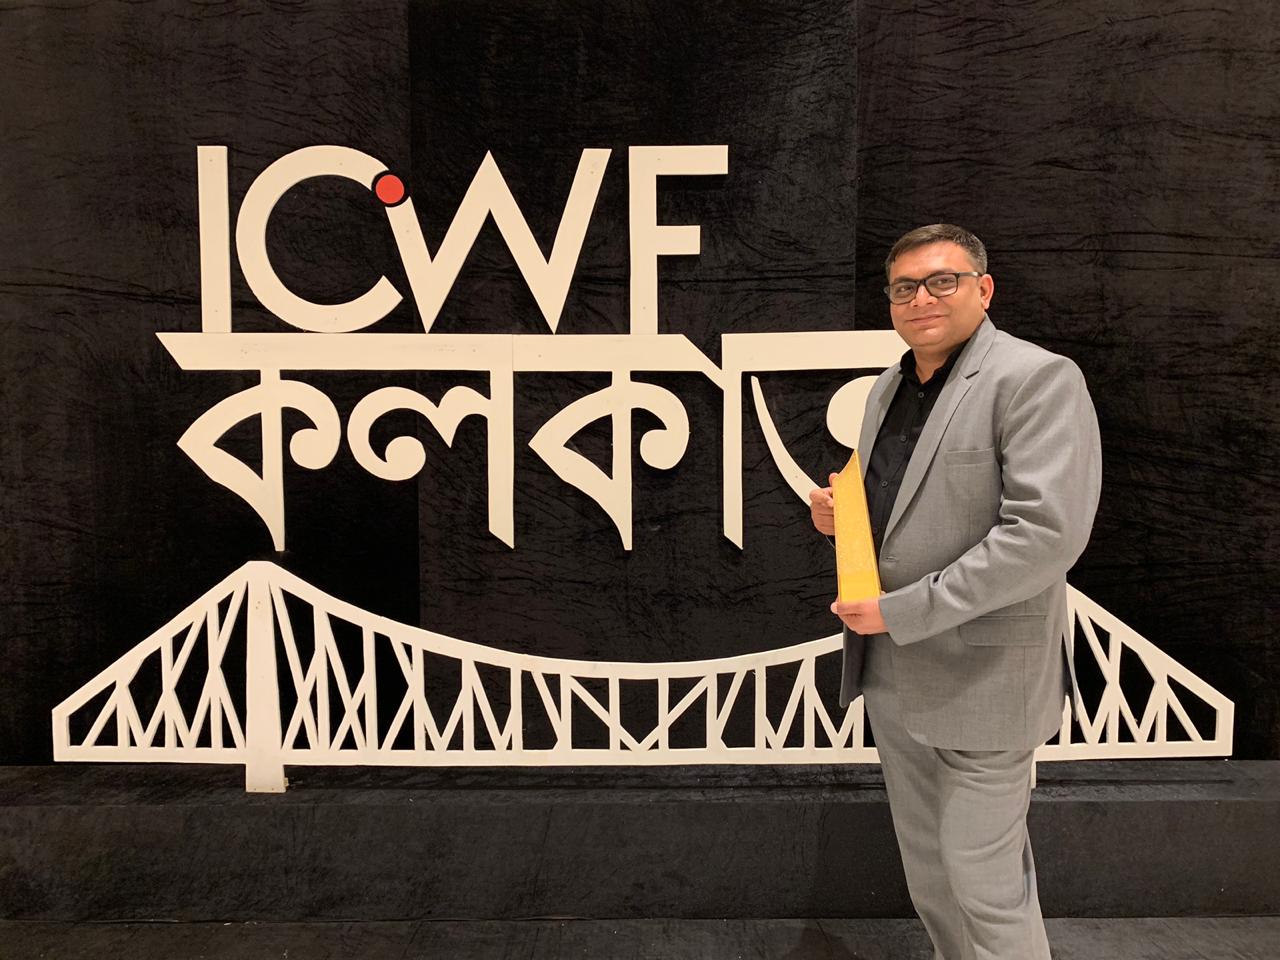 ICWF GIWA AWARD 2019